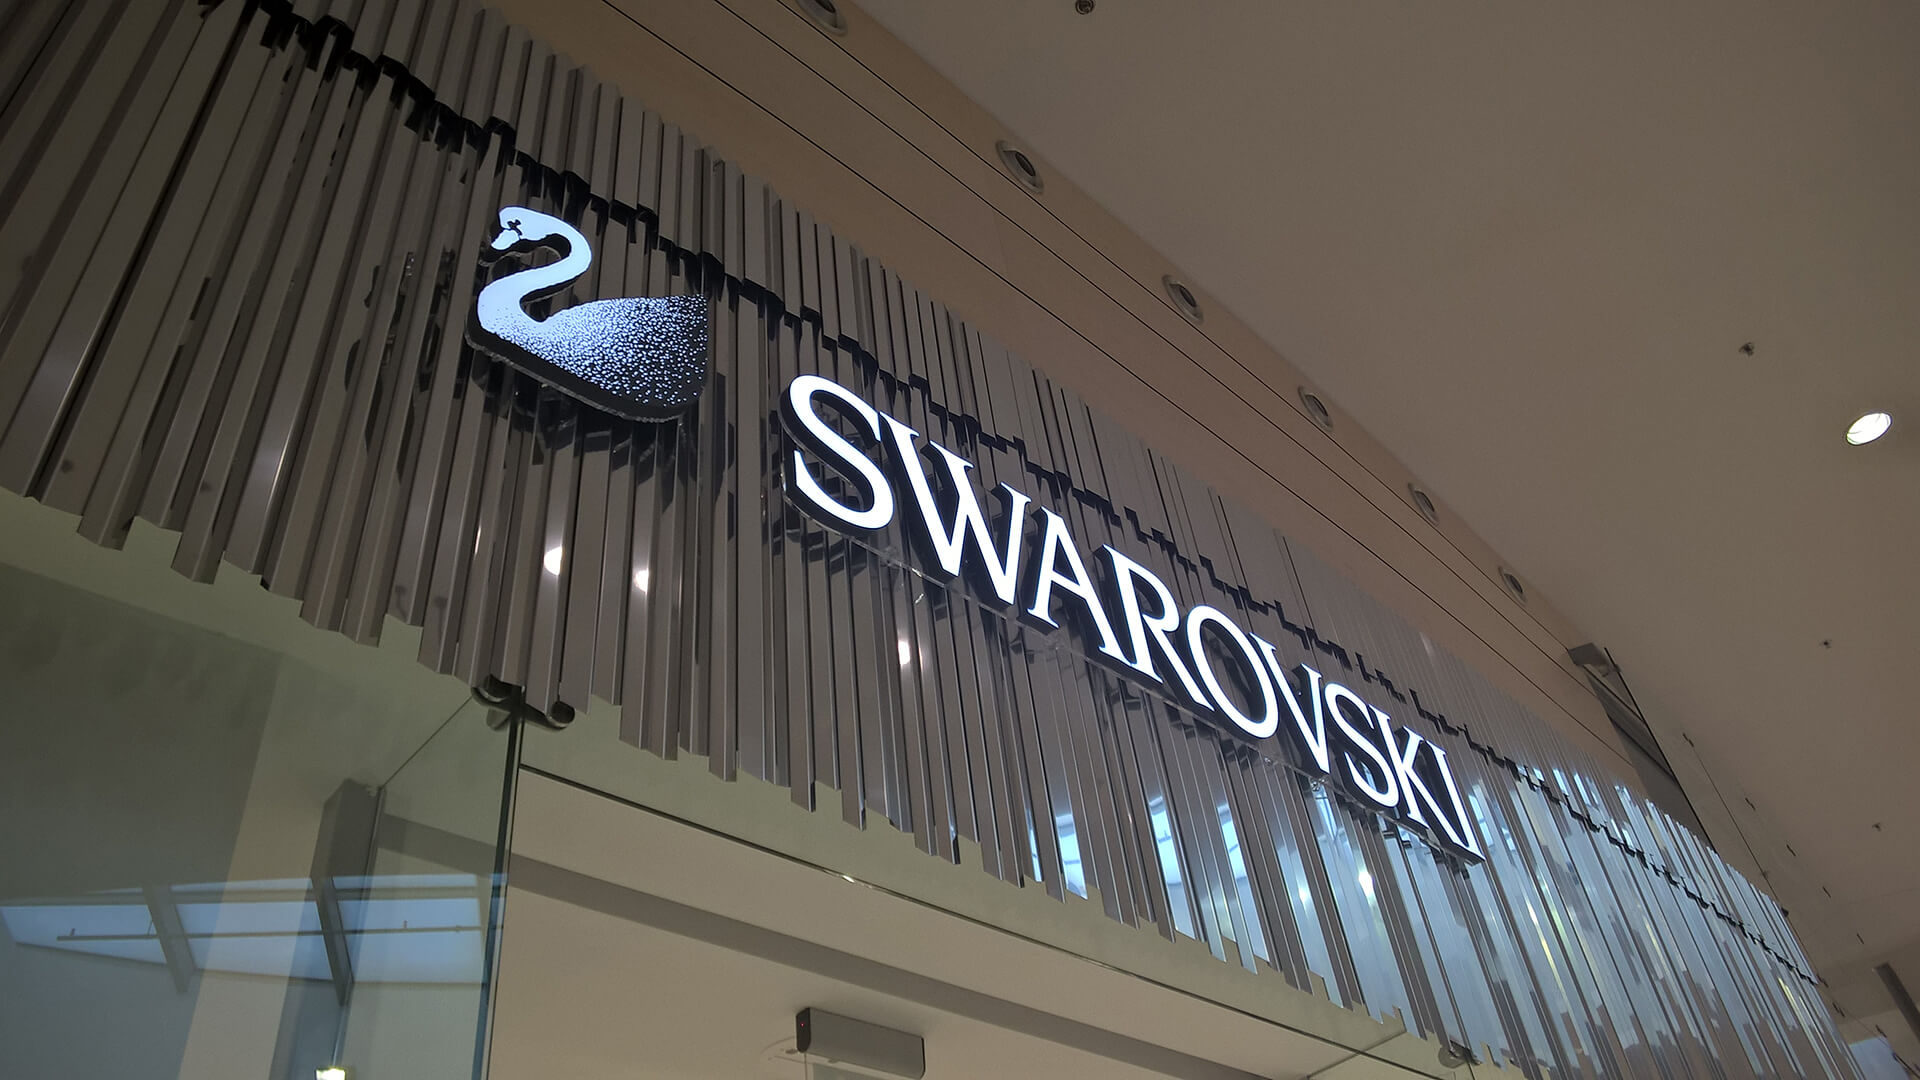 Swarovski Avion Shopping Park Ostrava